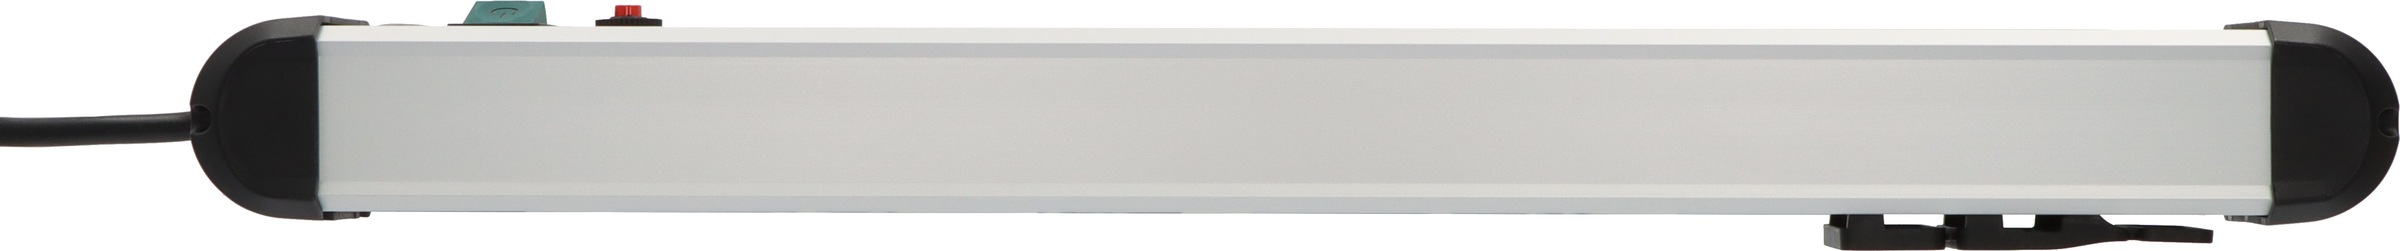 Brennenstuhl Steckdosenleiste »Premium-Pect-Line«, 6-fach, (Kabellänge 3 m), mit Überspannungsschutz, Schalter und 2-fach USB 3,1 A